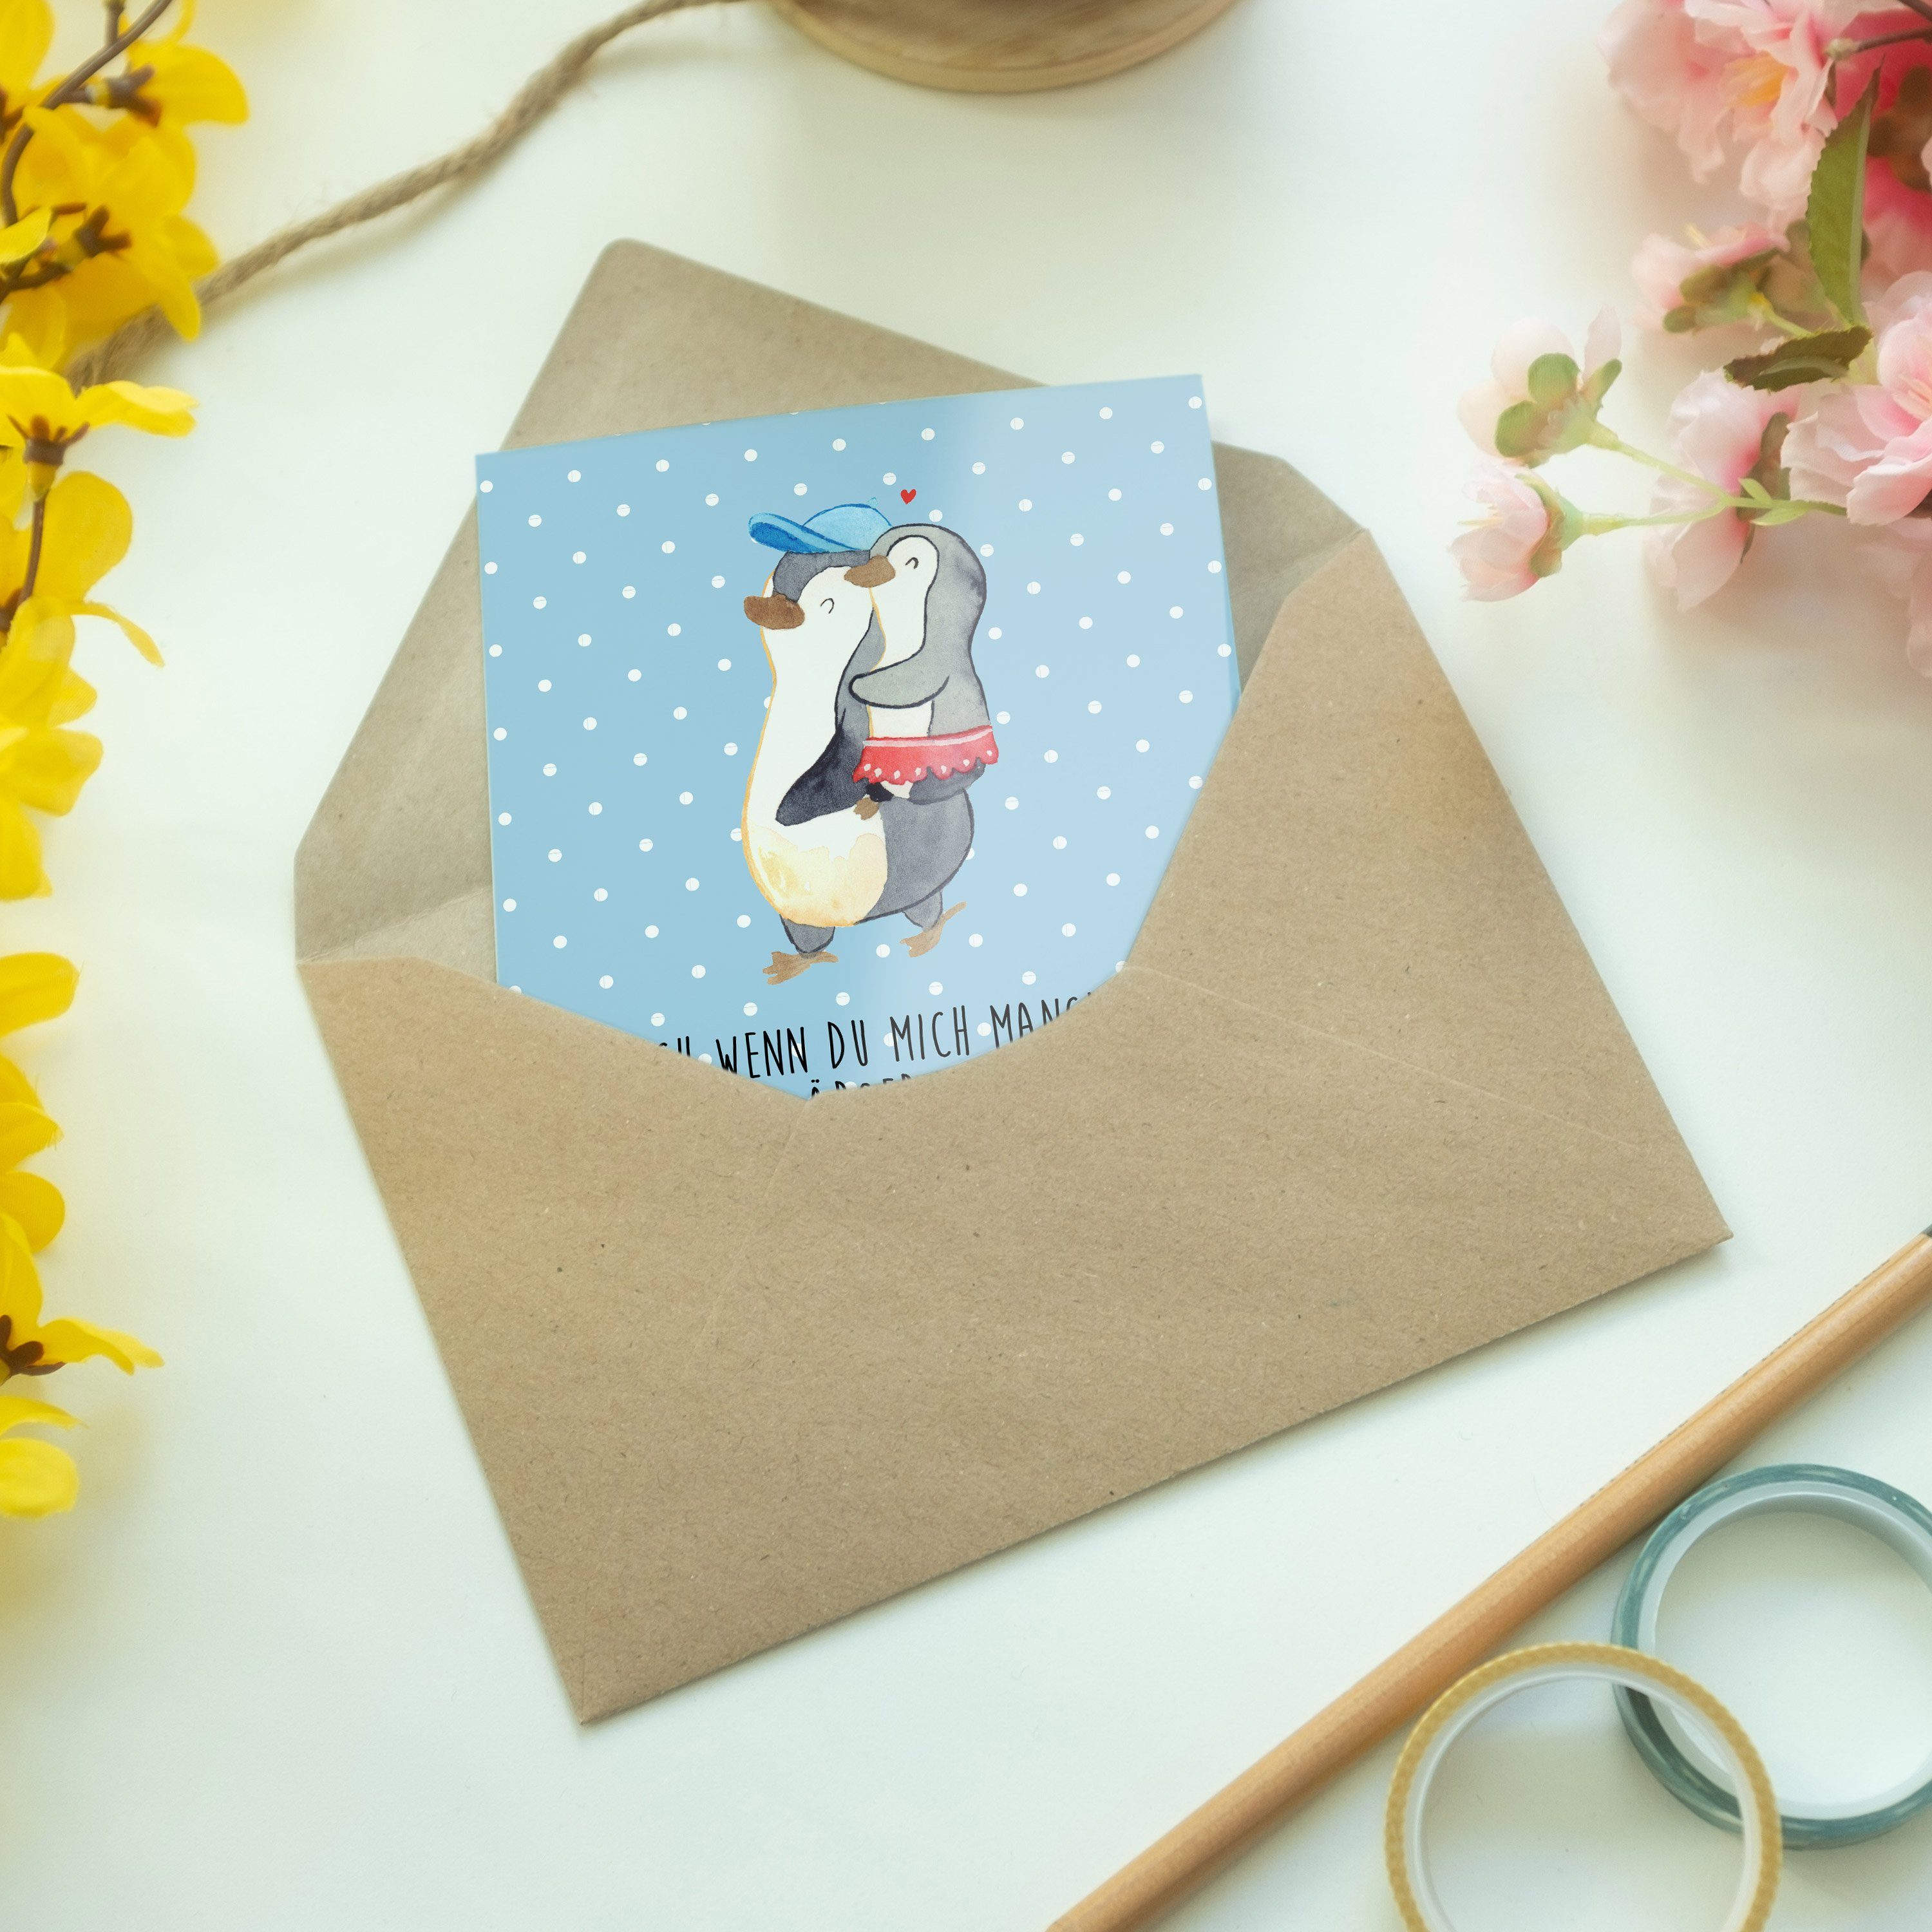 Mr. & Mrs. Panda Einladungs Grußkarte - Pastell Blau Kleine Pinguin Schwester Karte, Geschenk, 